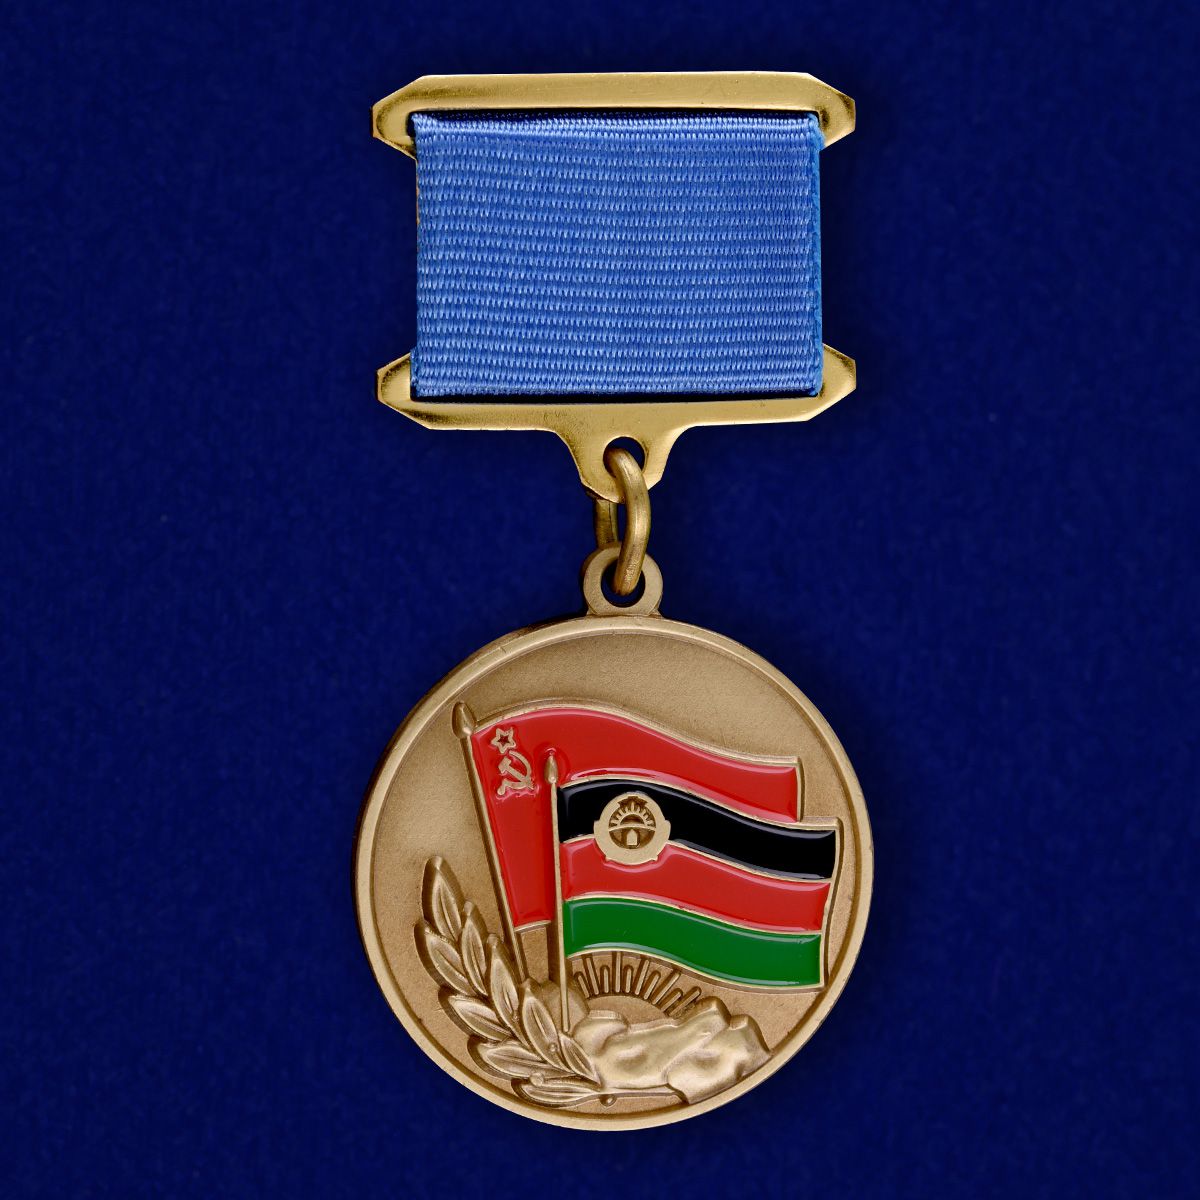 Медаль «Воину-интернационалисту от благодарного афганского народа» 